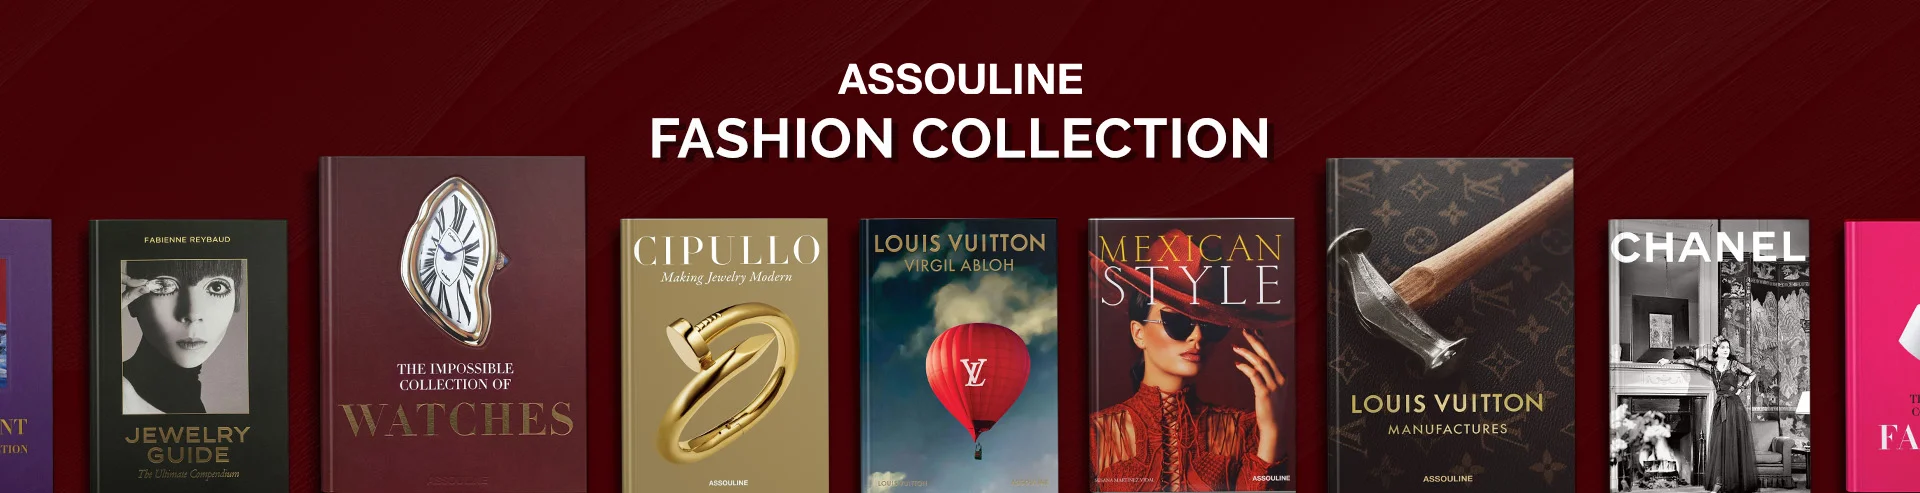 Full-Width-Large-Assouline-Fashion-Collection-Desktop.webp